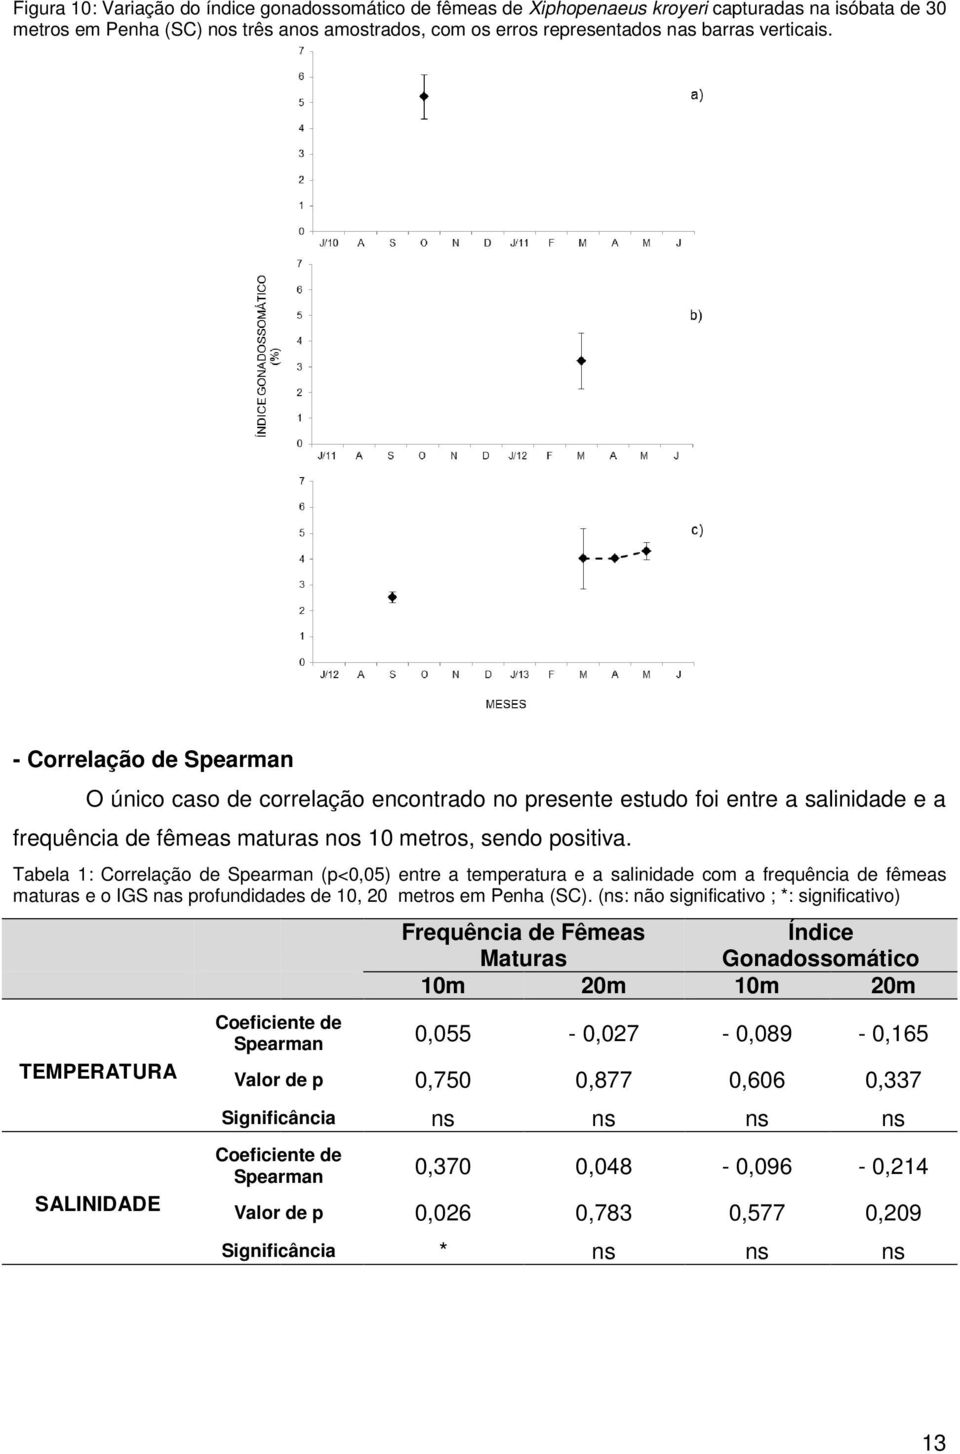 Tabela 1: Correlação de Spearman (p<0,05) entre a temperatura e a salinidade com a frequência de fêmeas maturas e o IGS nas profundidades de 10, 20 metros em Penha (SC).